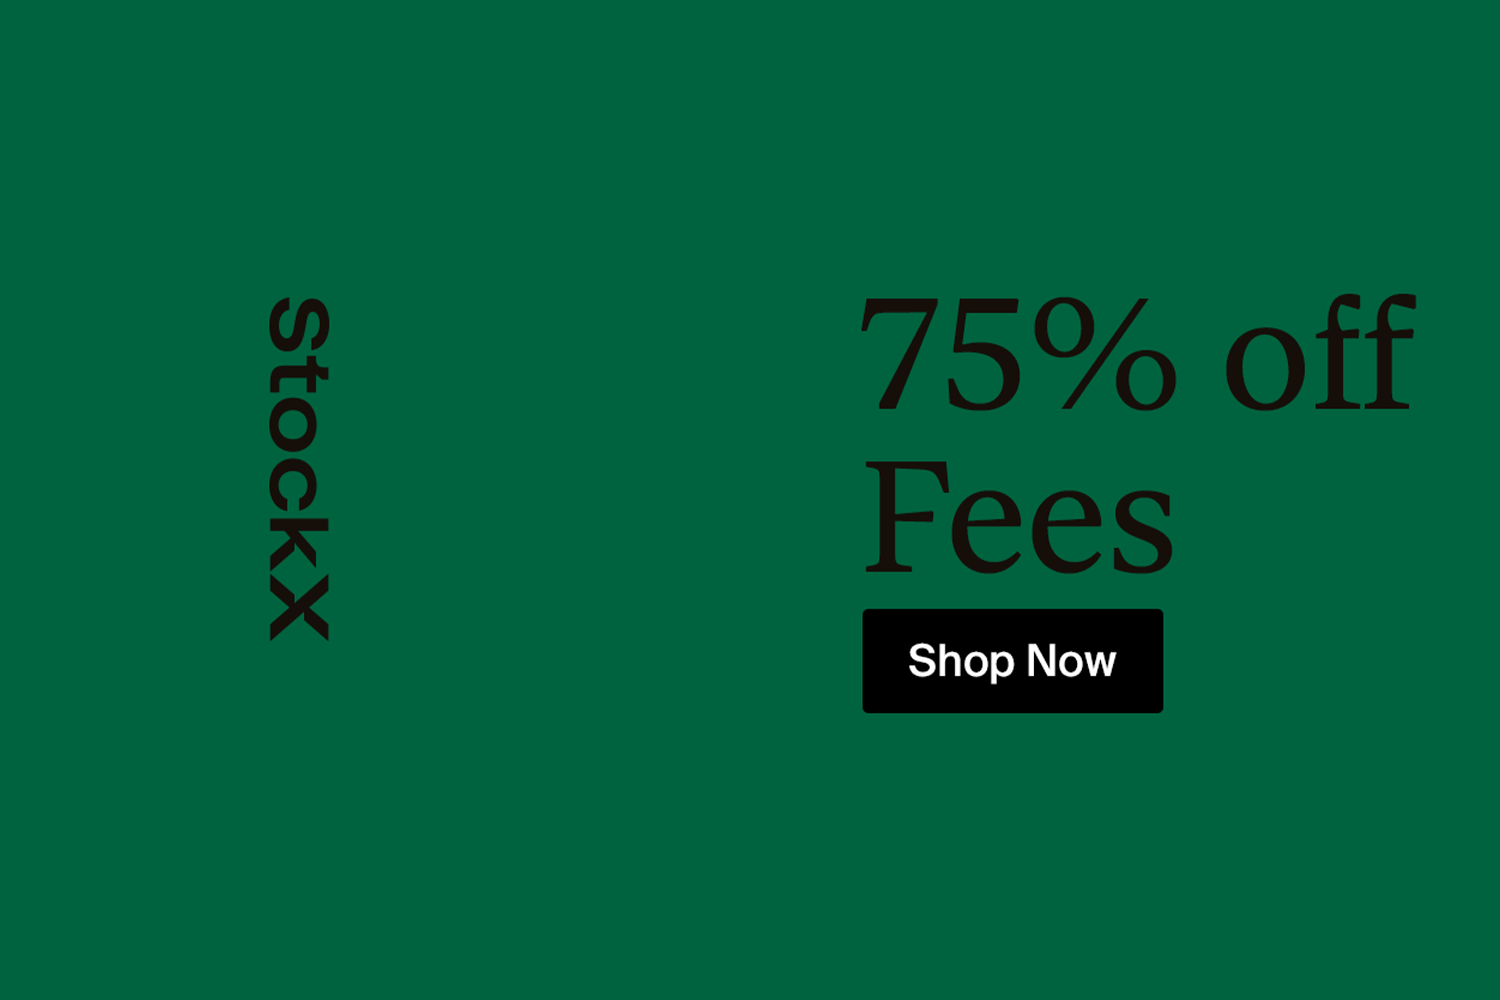 Ontvang 75% korting op fees bij StockX